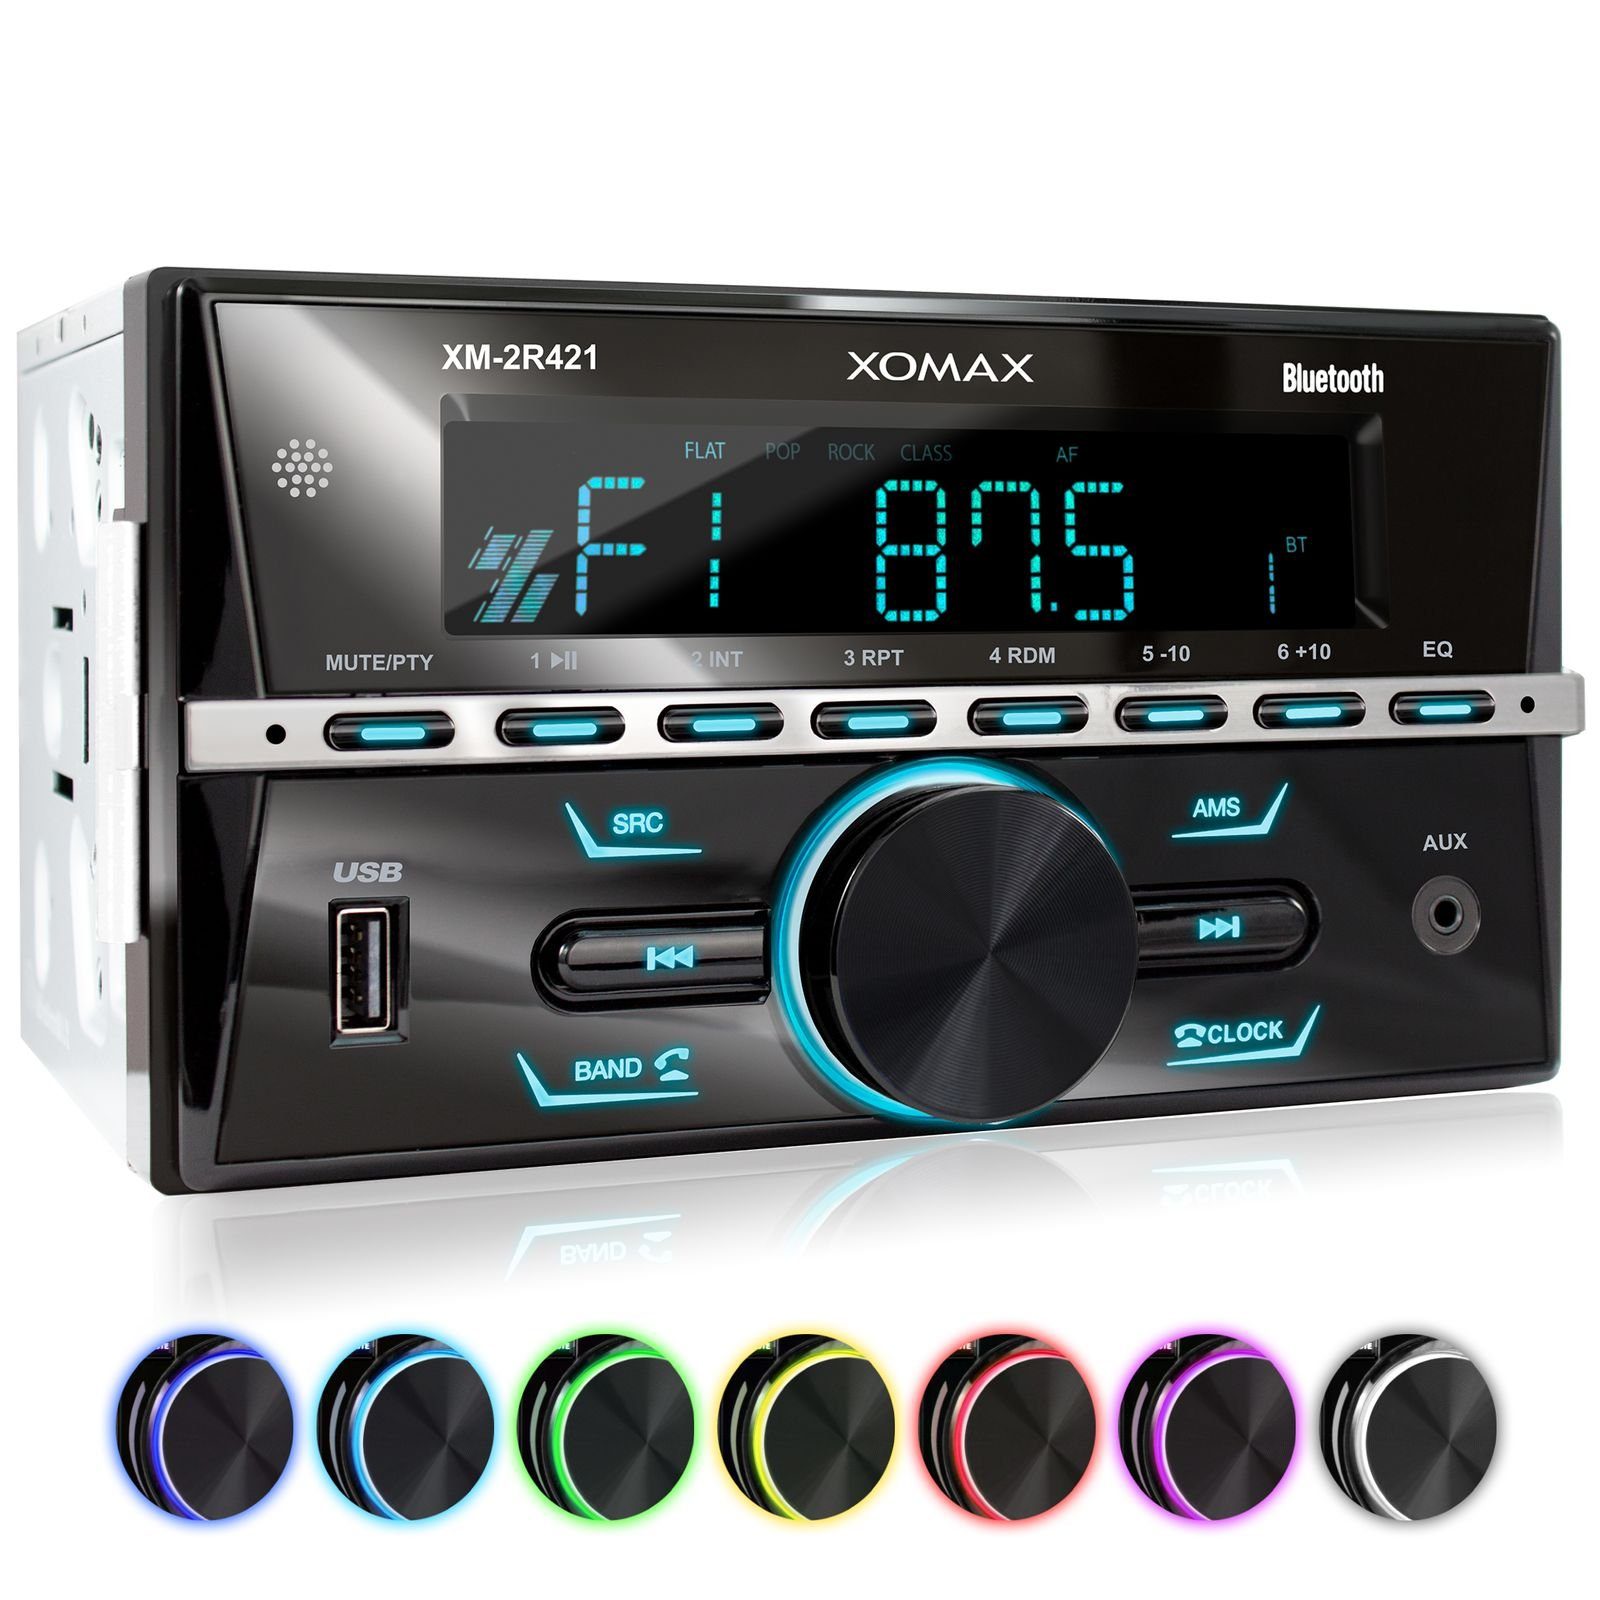 XOMAX »XOMAX XM-2R421 Autoradio mit Bluetooth Freisprecheinrichtung, USB  und AUX-IN, 2 DIN« Autoradio online kaufen | OTTO